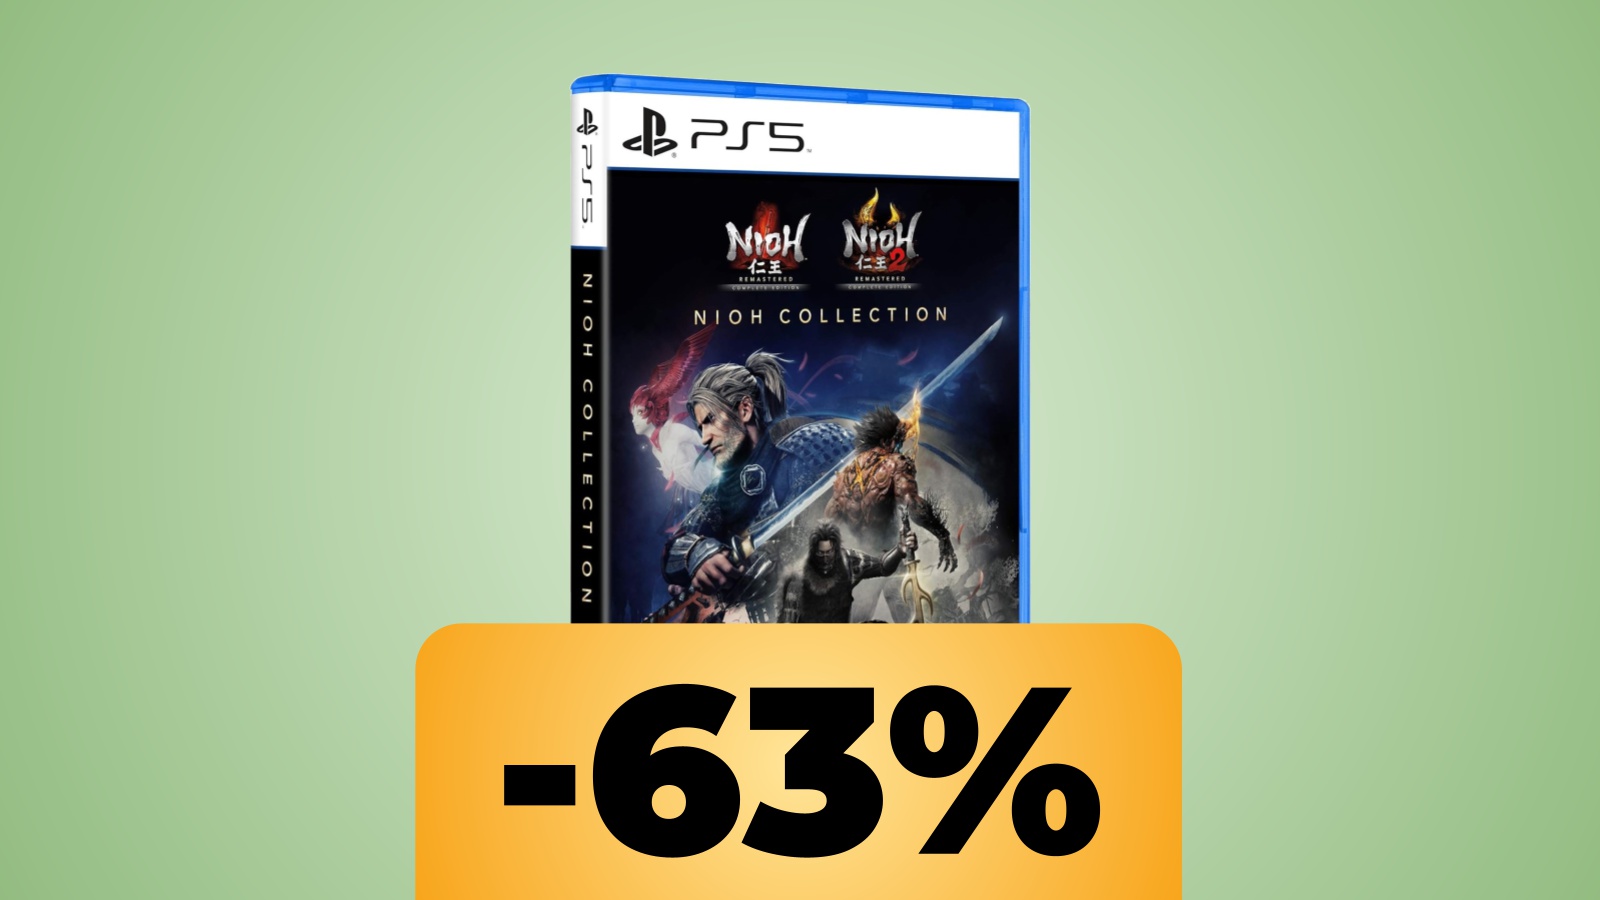 Nioh Collection: due giochi in uno per PS5 a basso prezzo su Amazon Italia